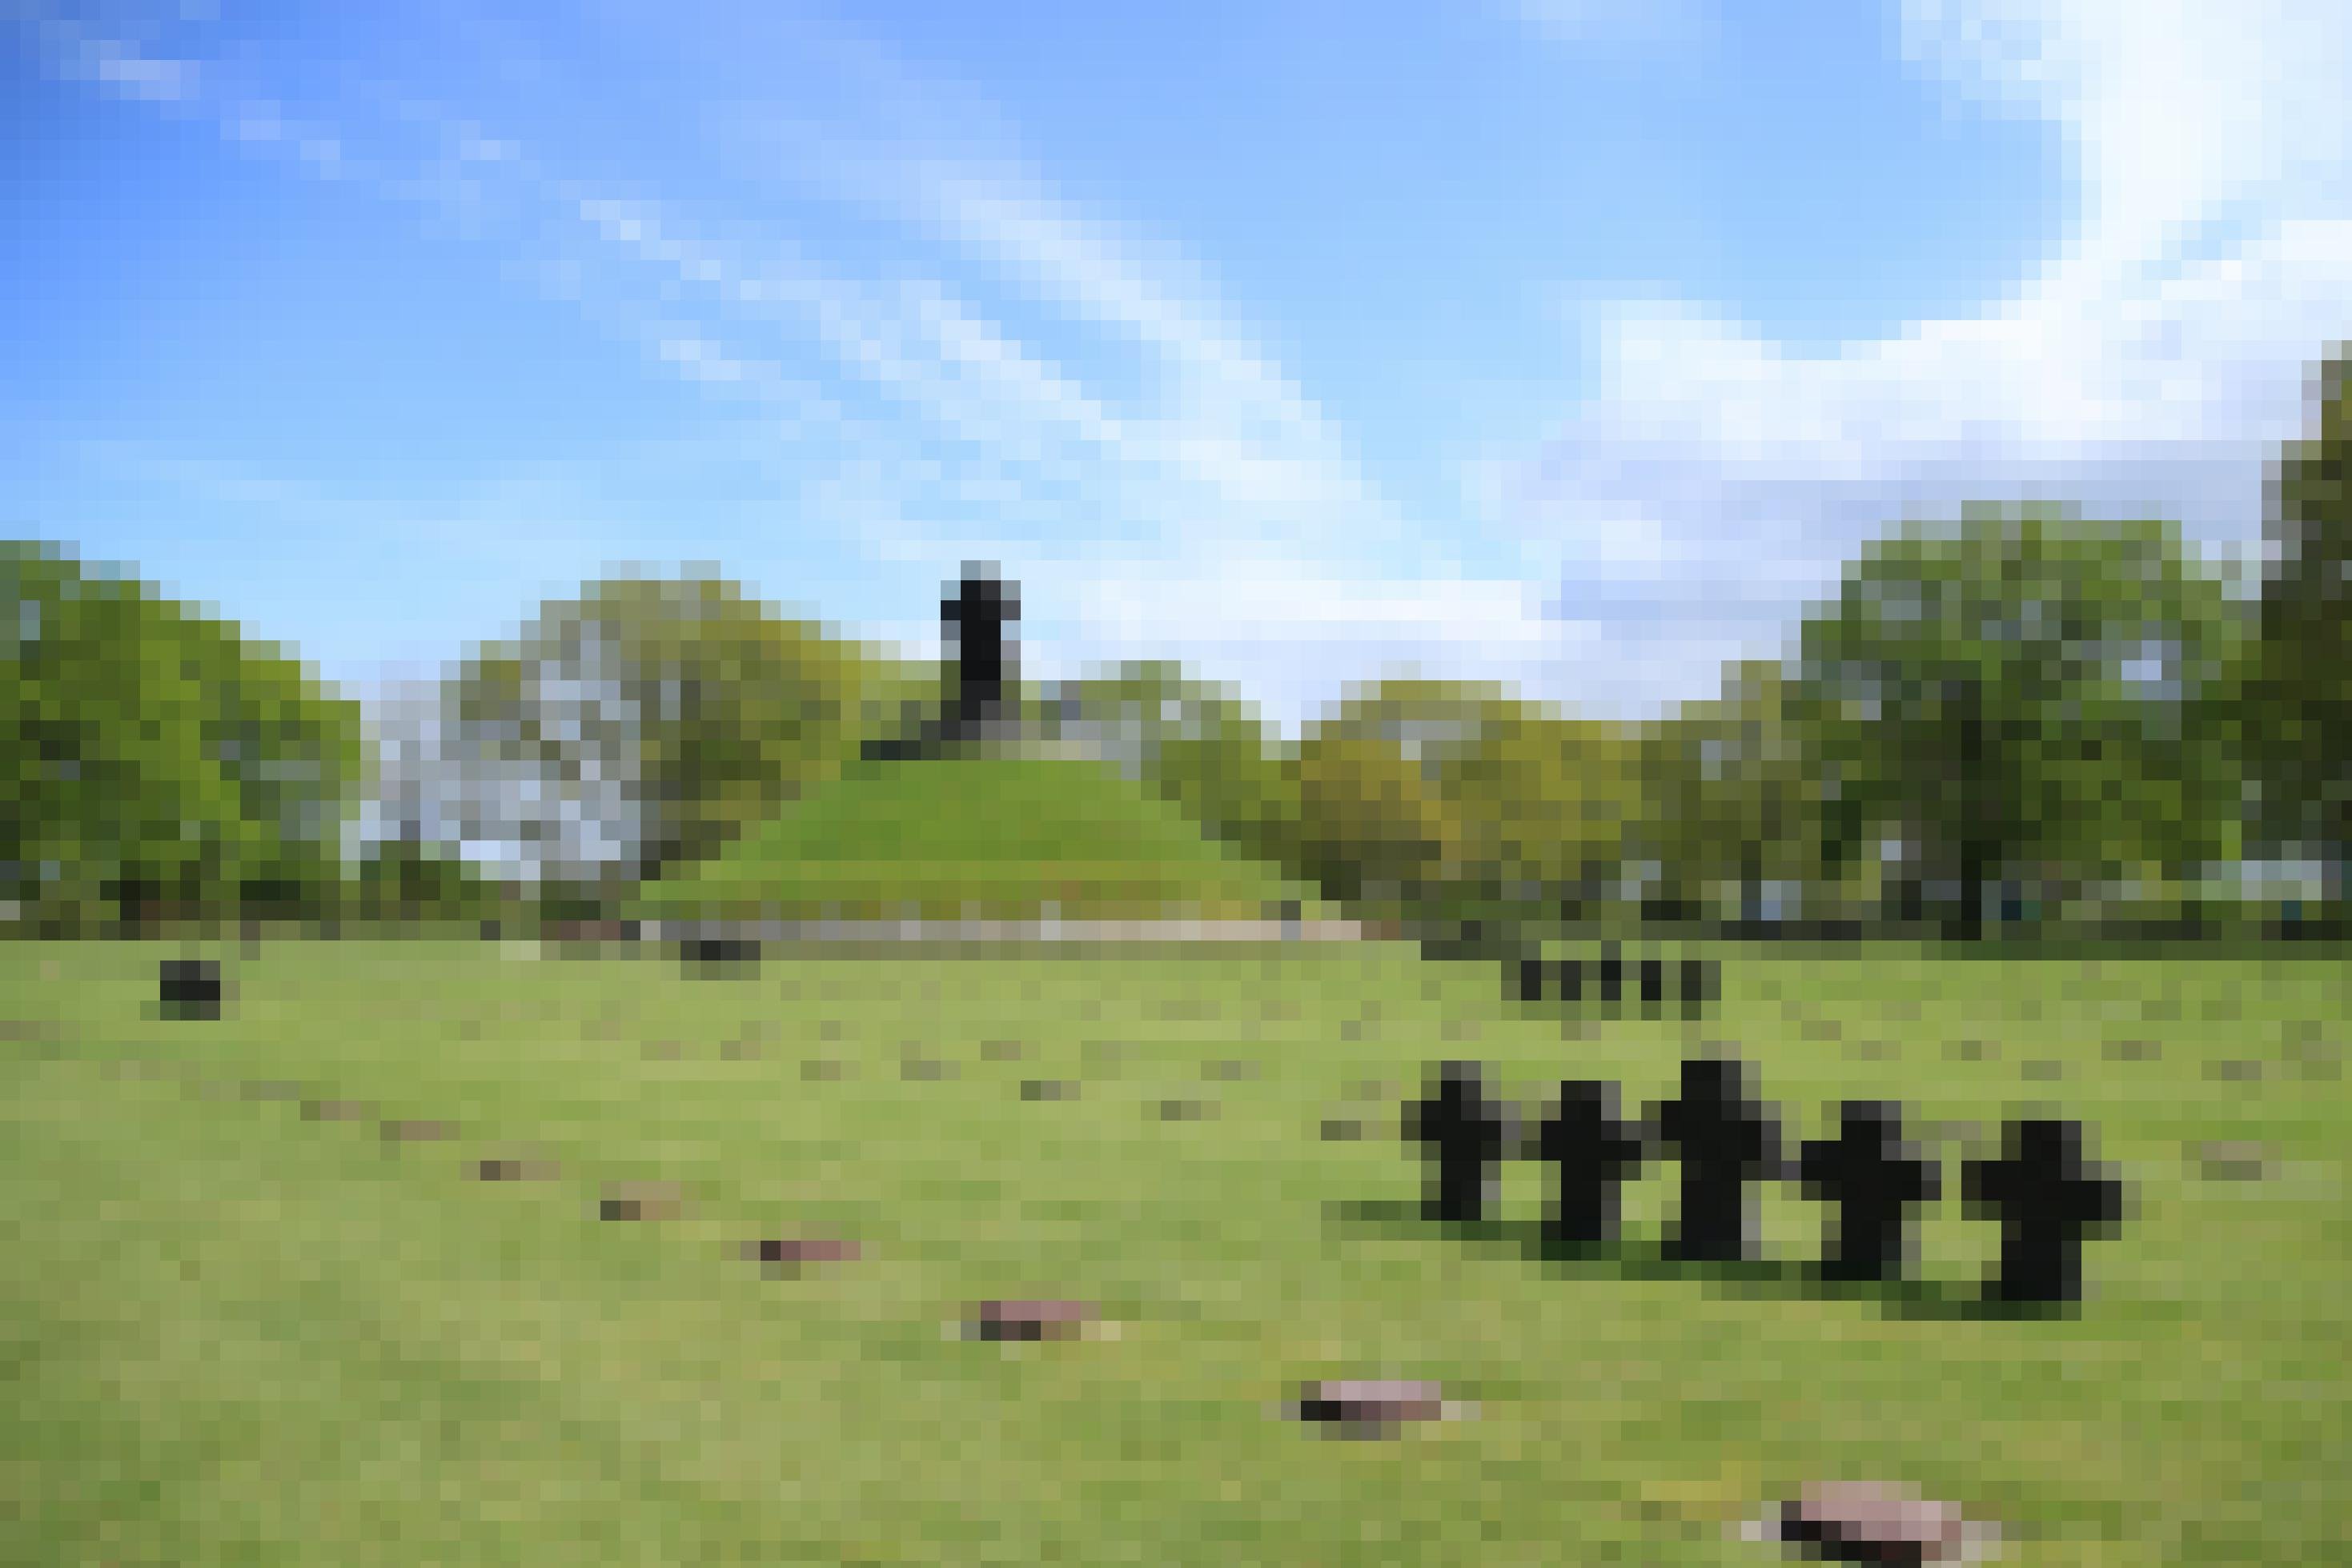 Ein Friedhof mit einigen steinernen Kreuzen und einer Erhöhung samt Kreuz-Denkmal.